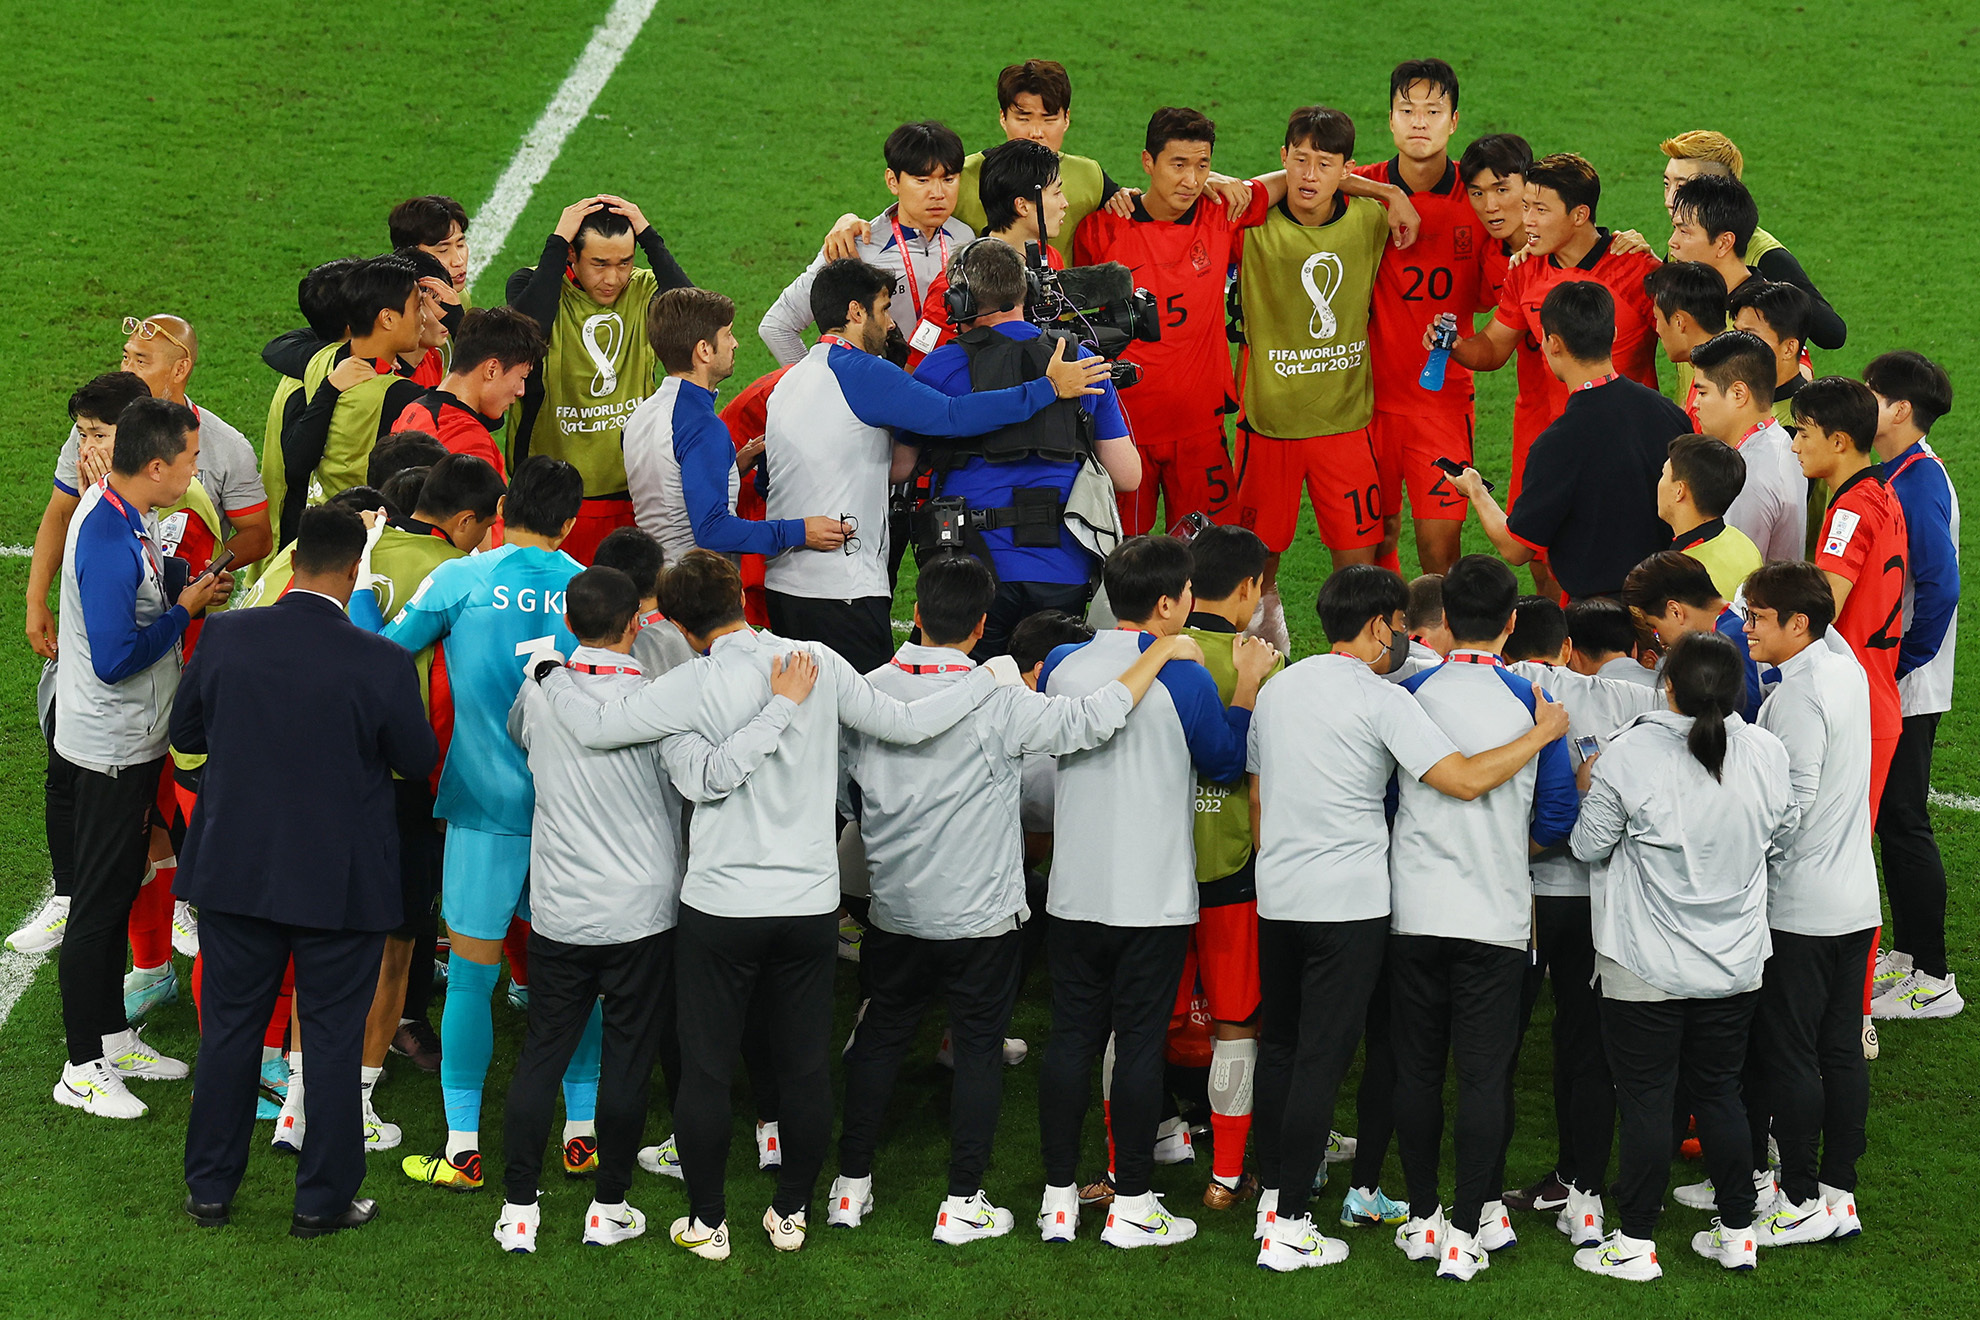 Con un gol de Urruguay, Corea del Sur quedaba fuera. | Reuters